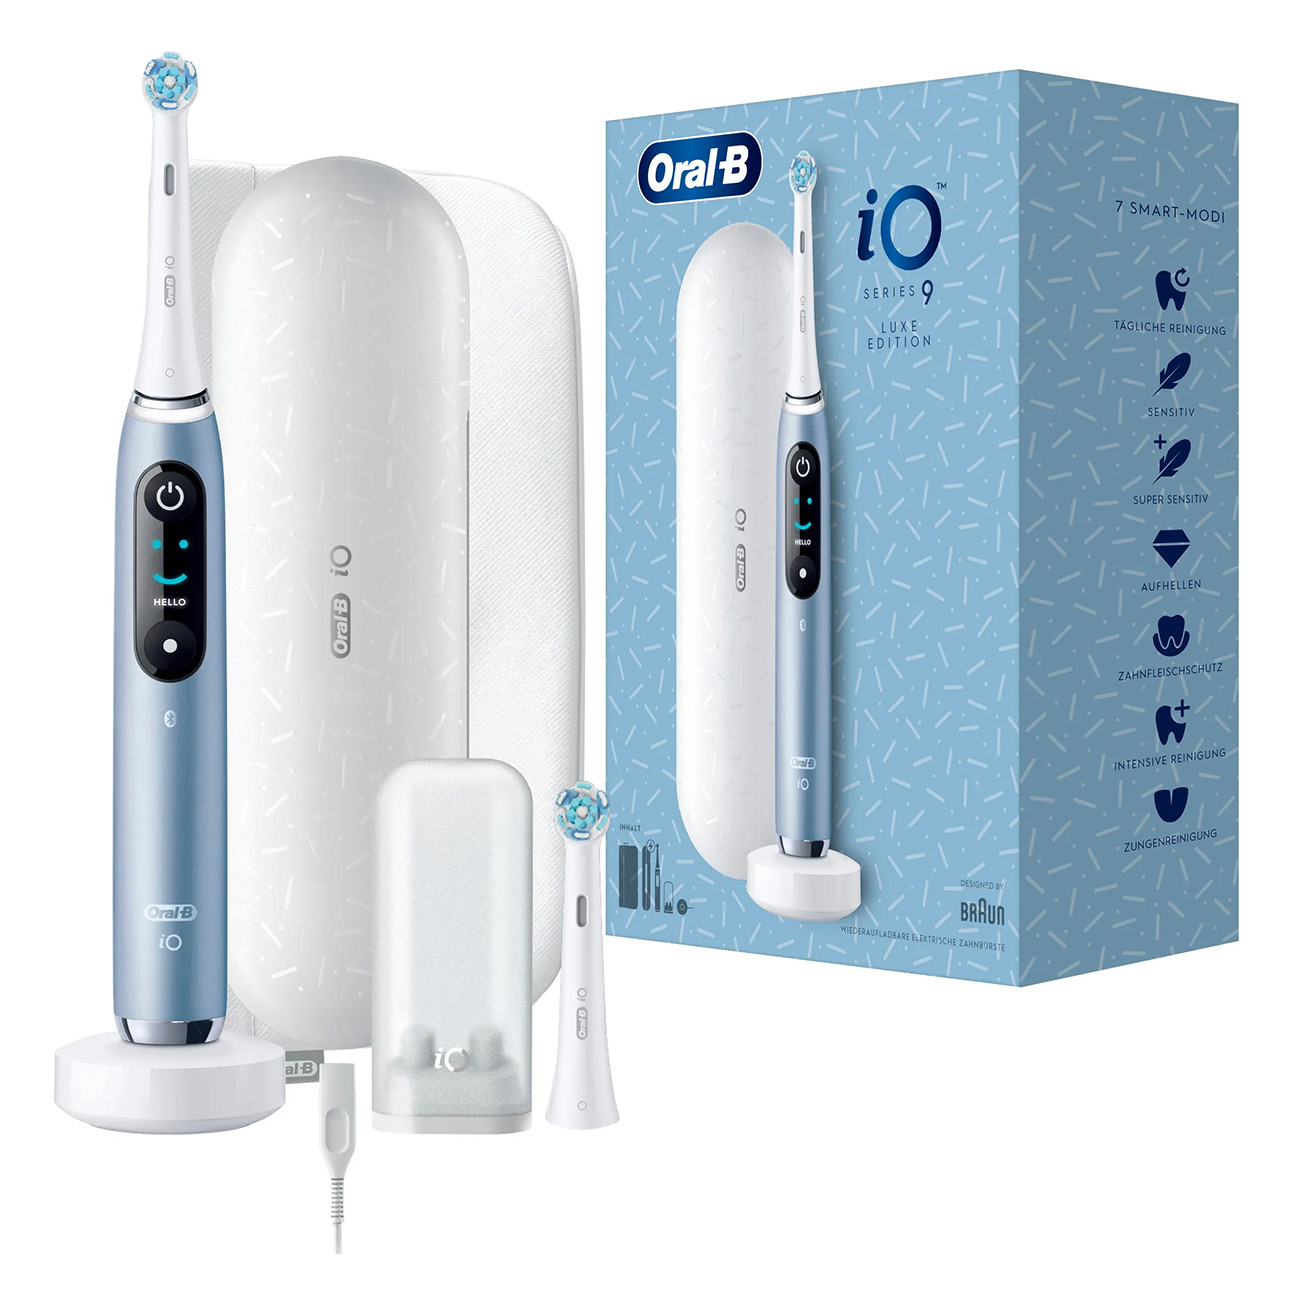 Zahnbürste ORAL-B blau 9 Series Luxe Edition Elektrische